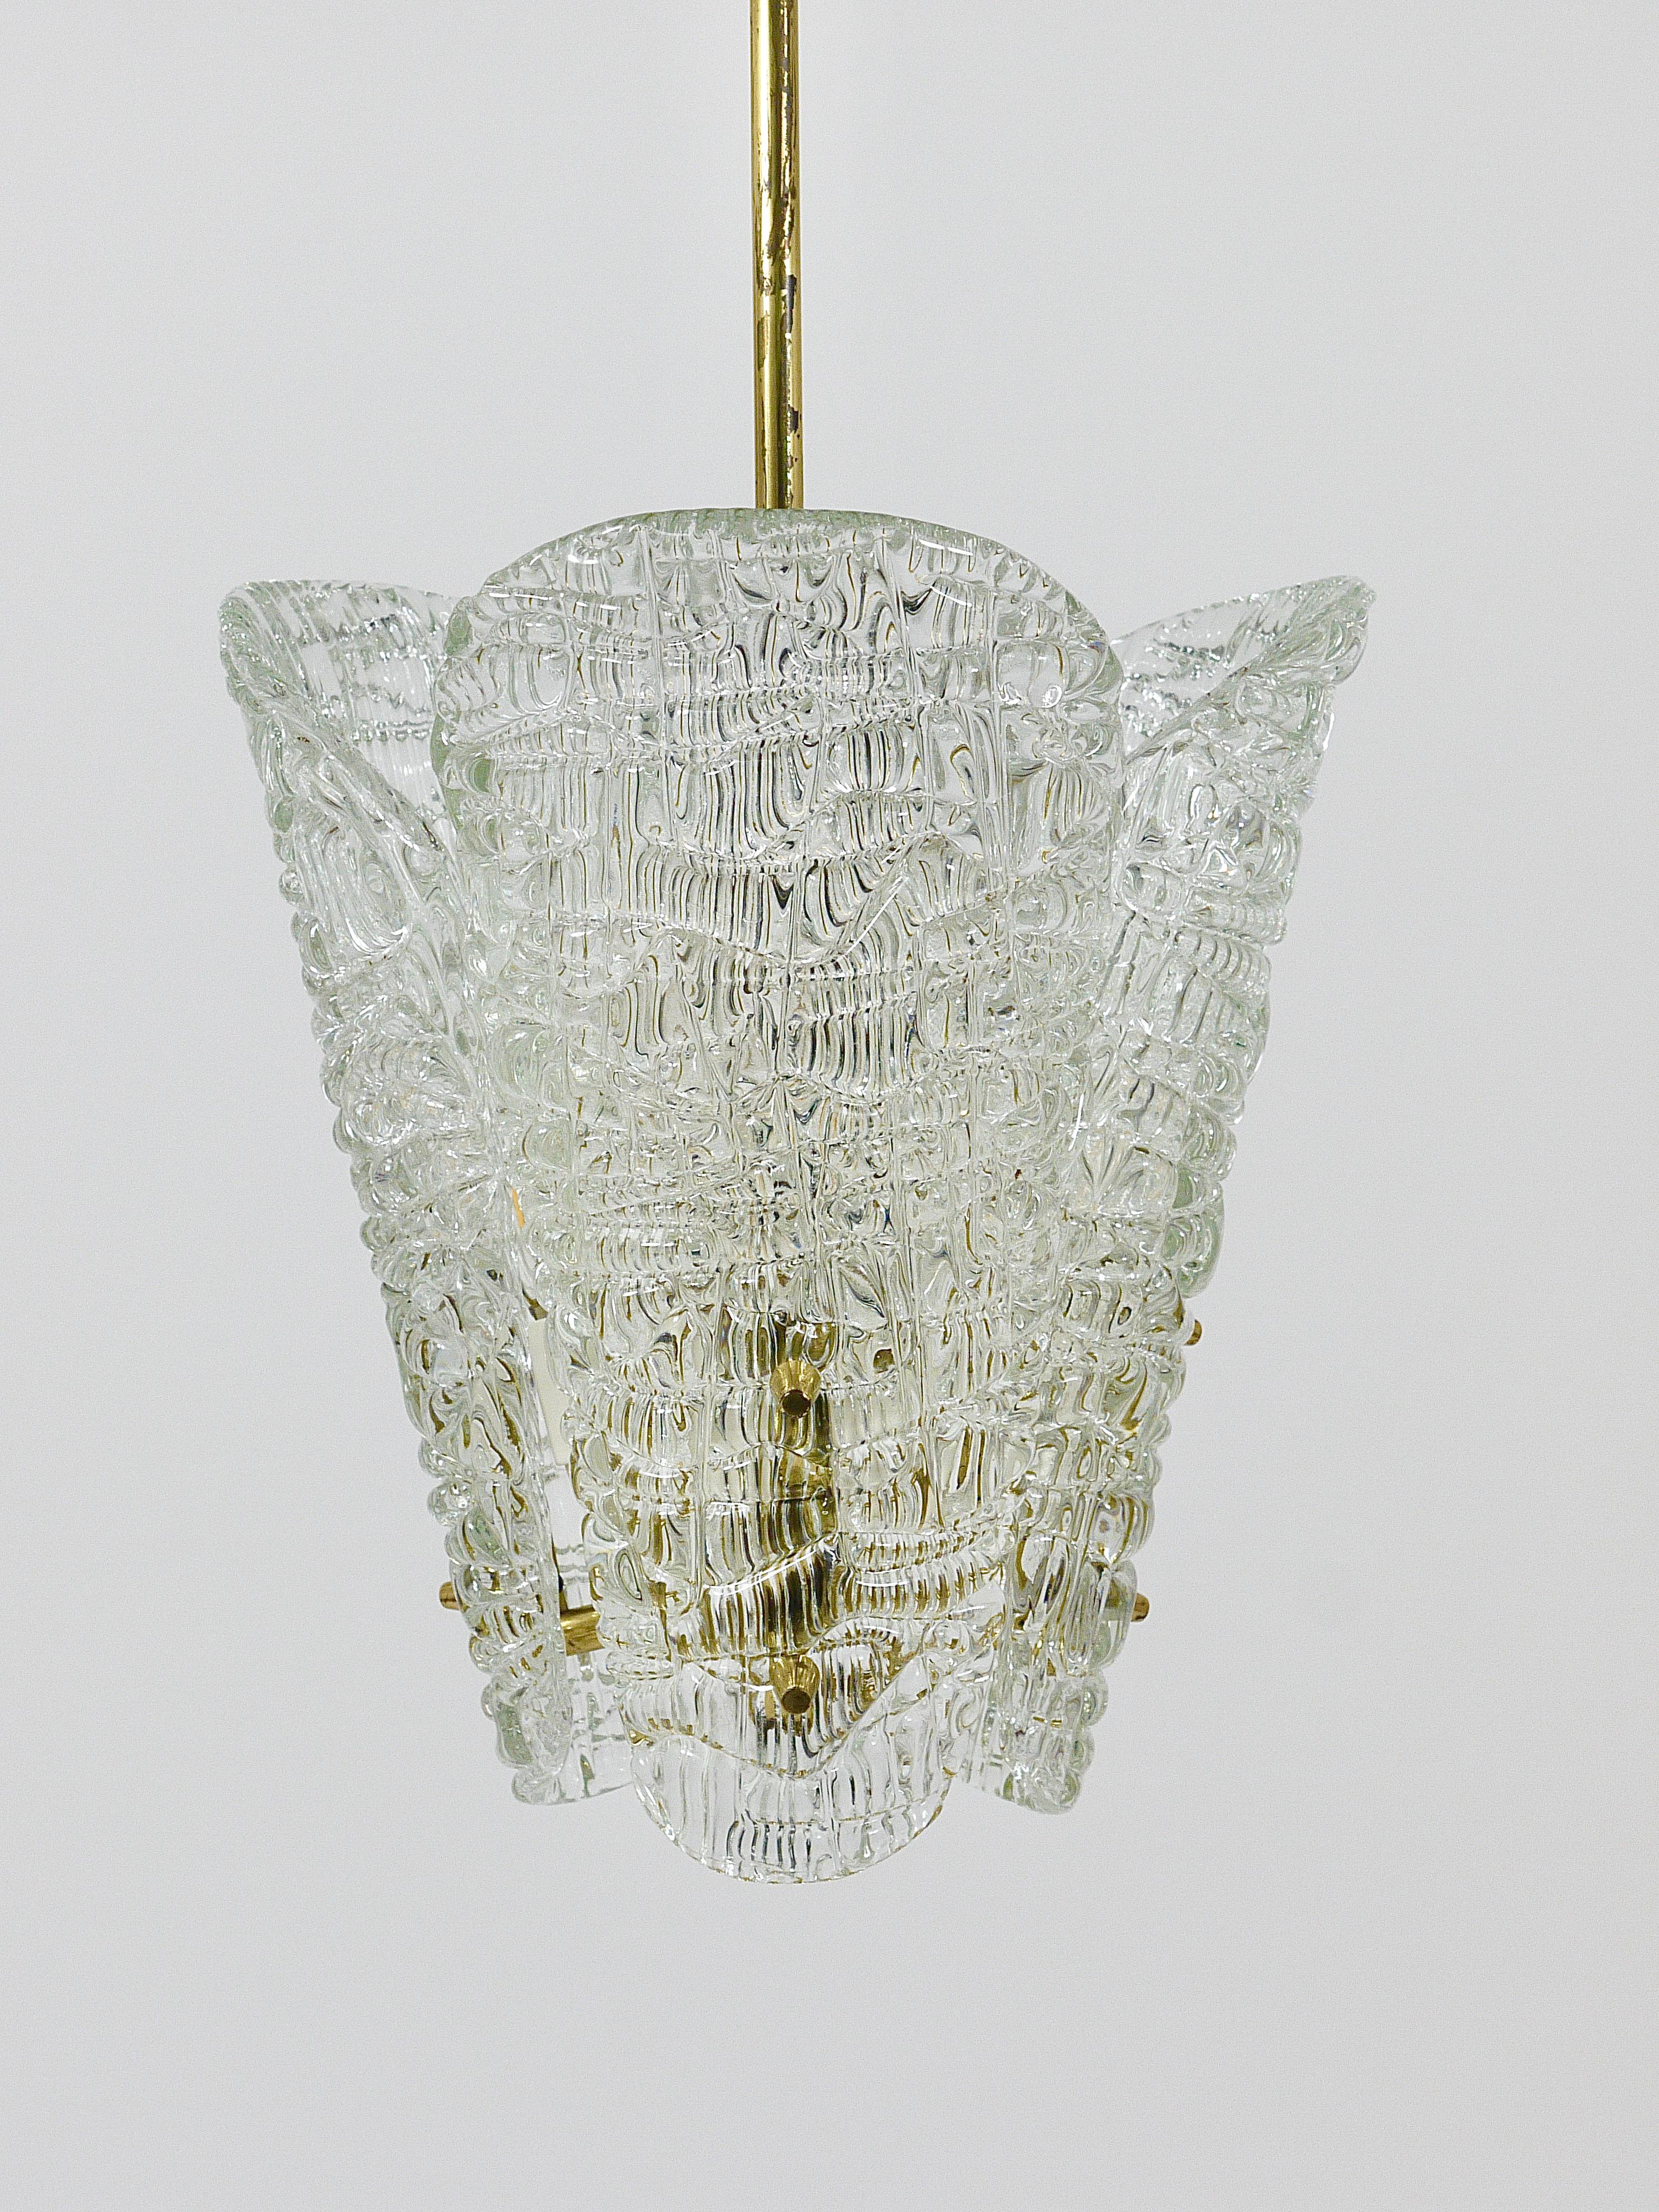 J. T. Kalmar Midcentury Brass & Textured Glass Chandelier, Vienna, 1950s For Sale 4